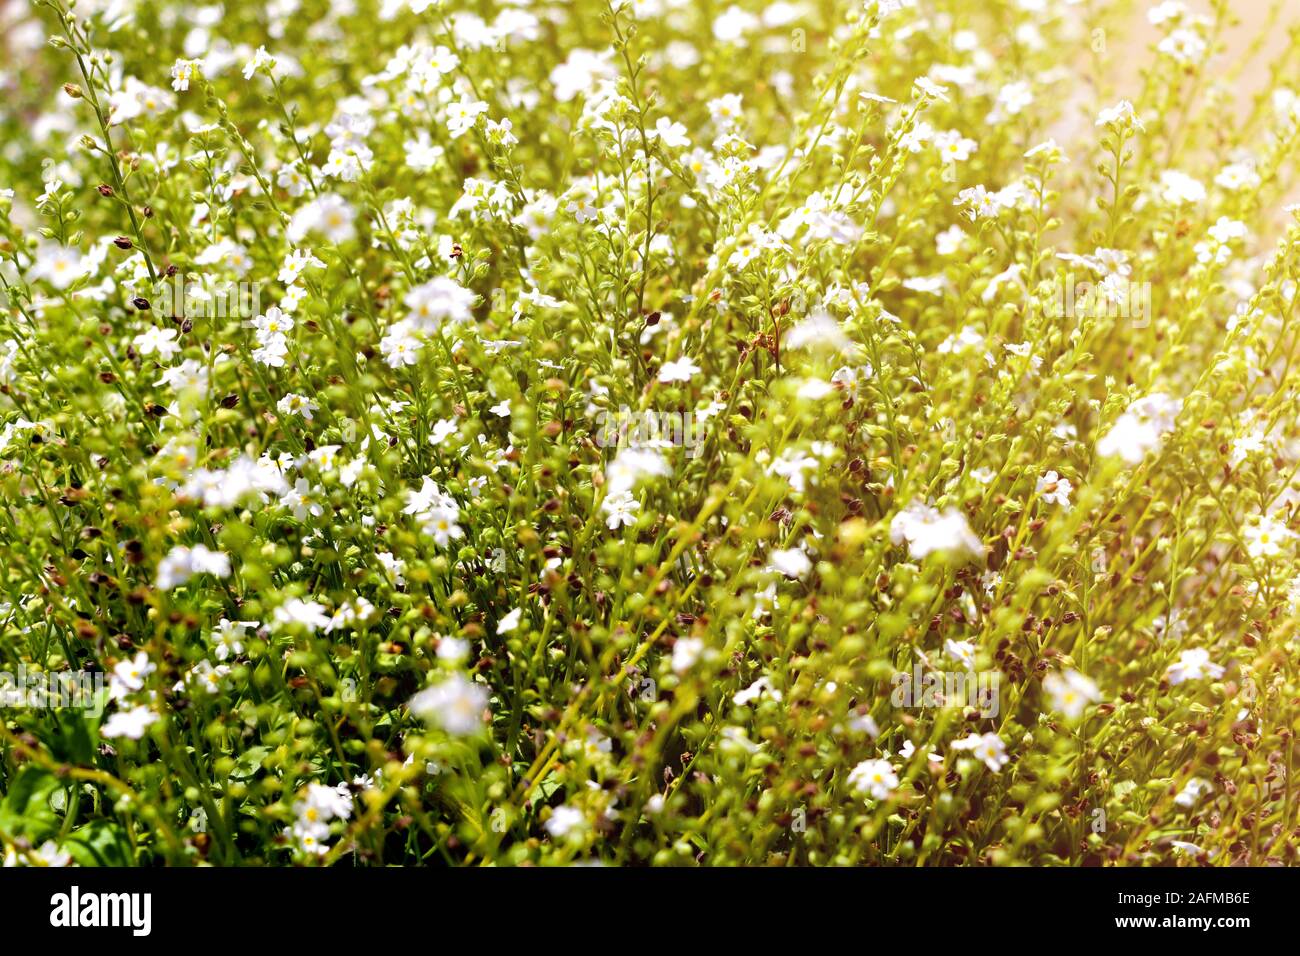 Galium odoratum, flowering herbs. Out of focus Stock Photo